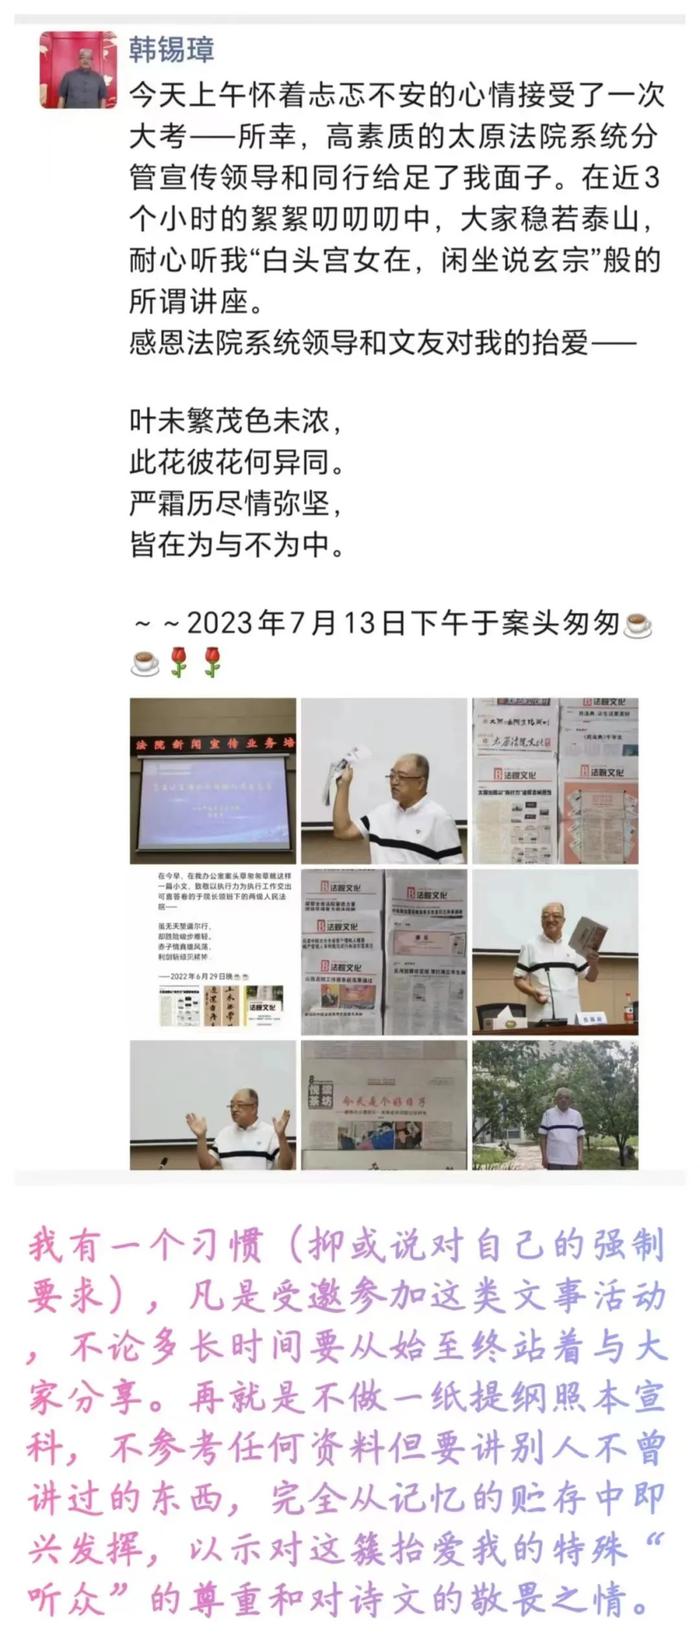 吕梁中院院长刘勇飞作词的院歌《法治旗帜永飘扬》在国庆节发布